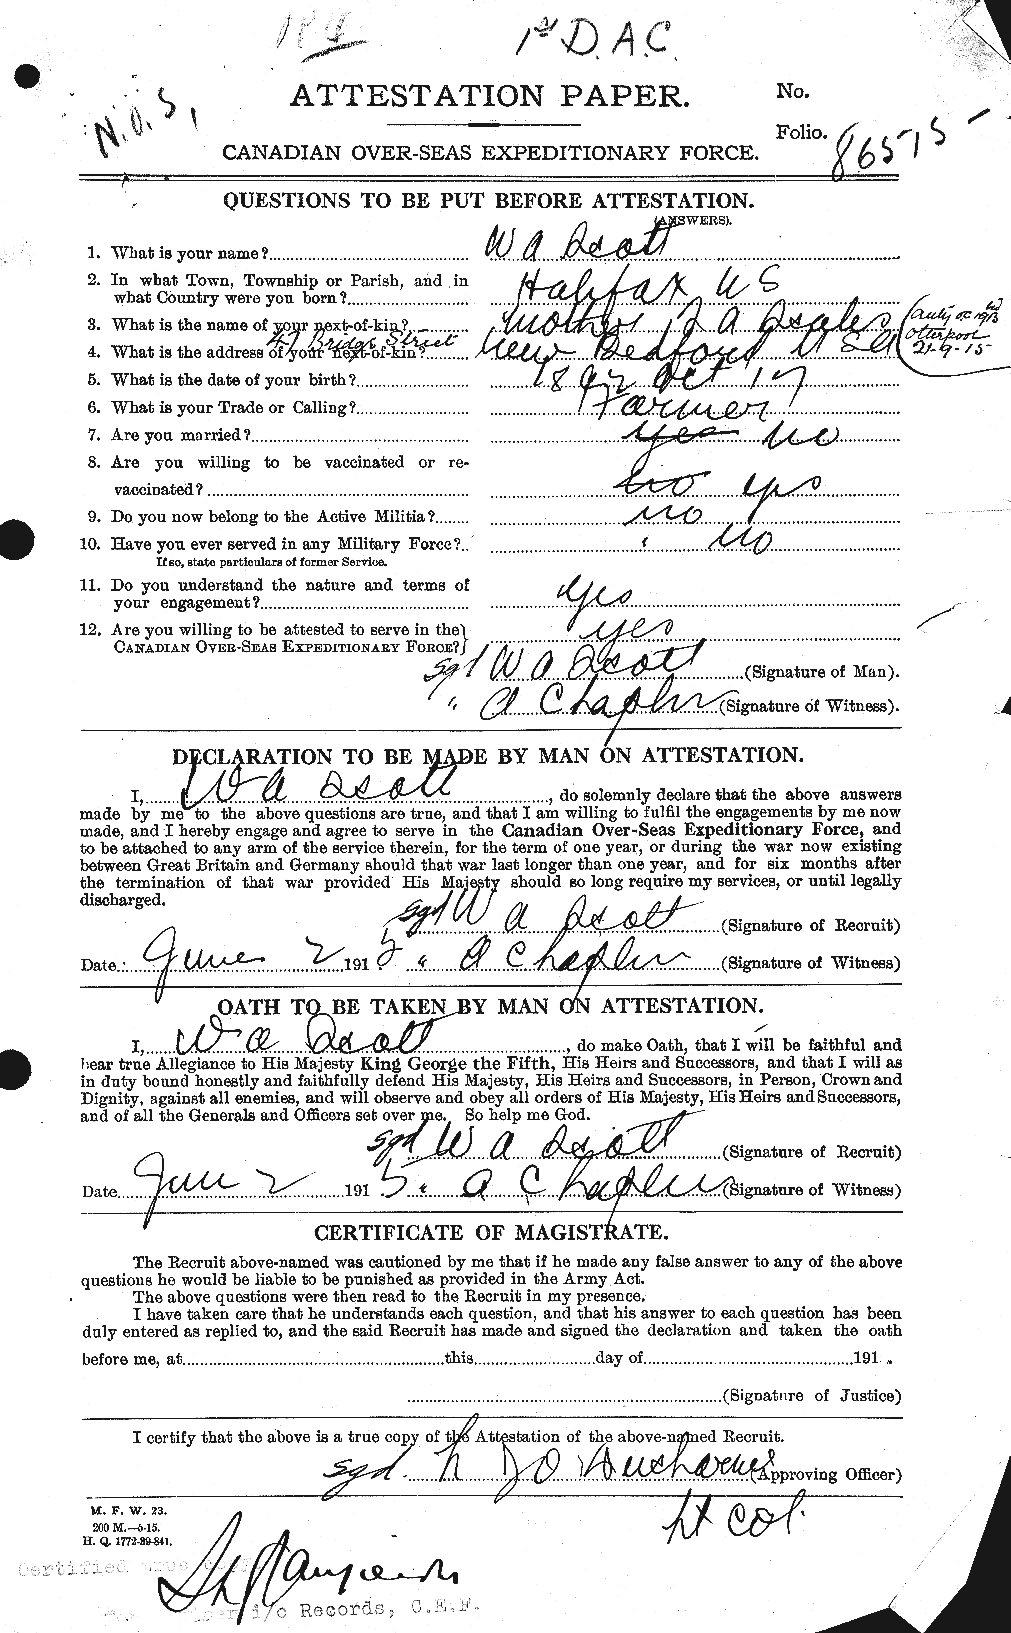 Dossiers du Personnel de la Première Guerre mondiale - CEC 088198a